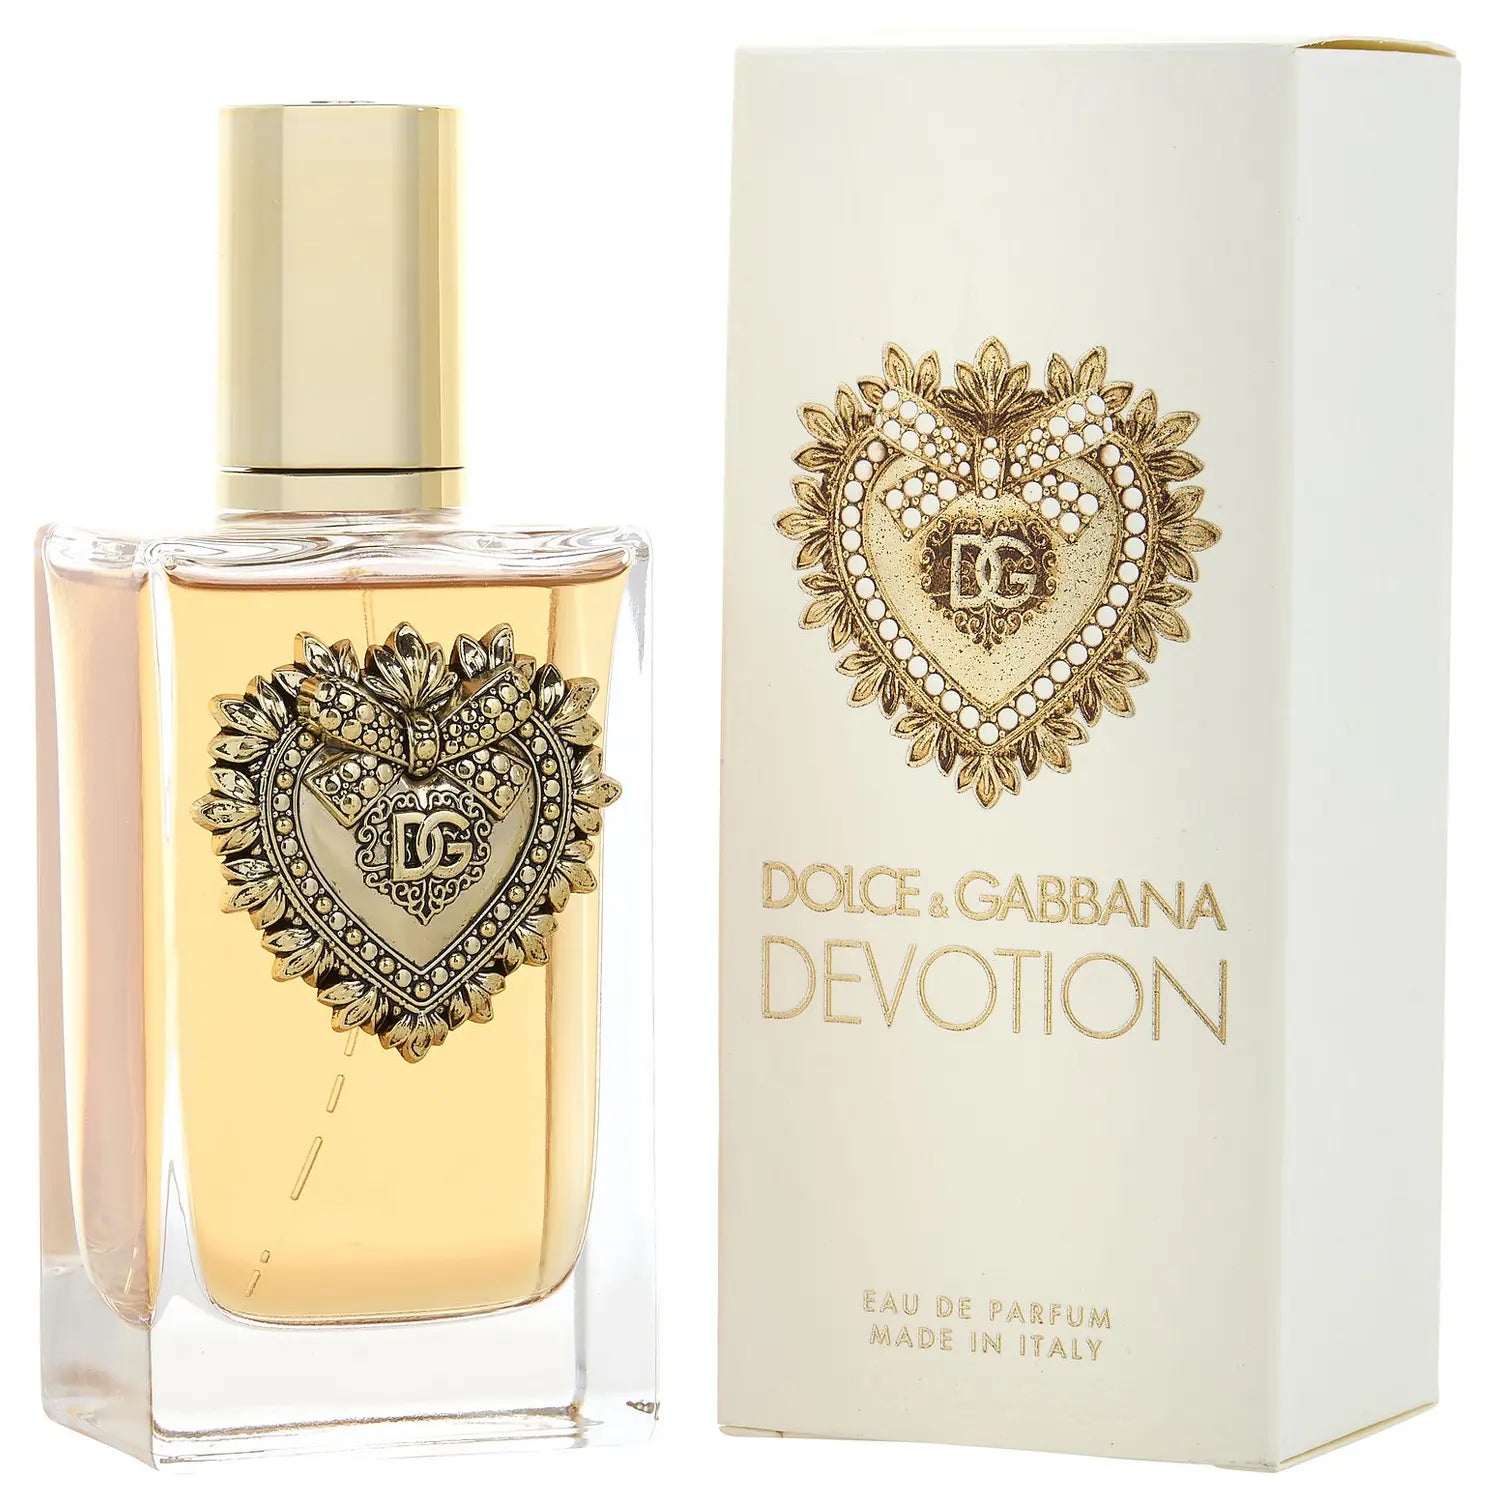 Devotion by Dolce & Gabbana 3.3 oz EDP Spray for Women